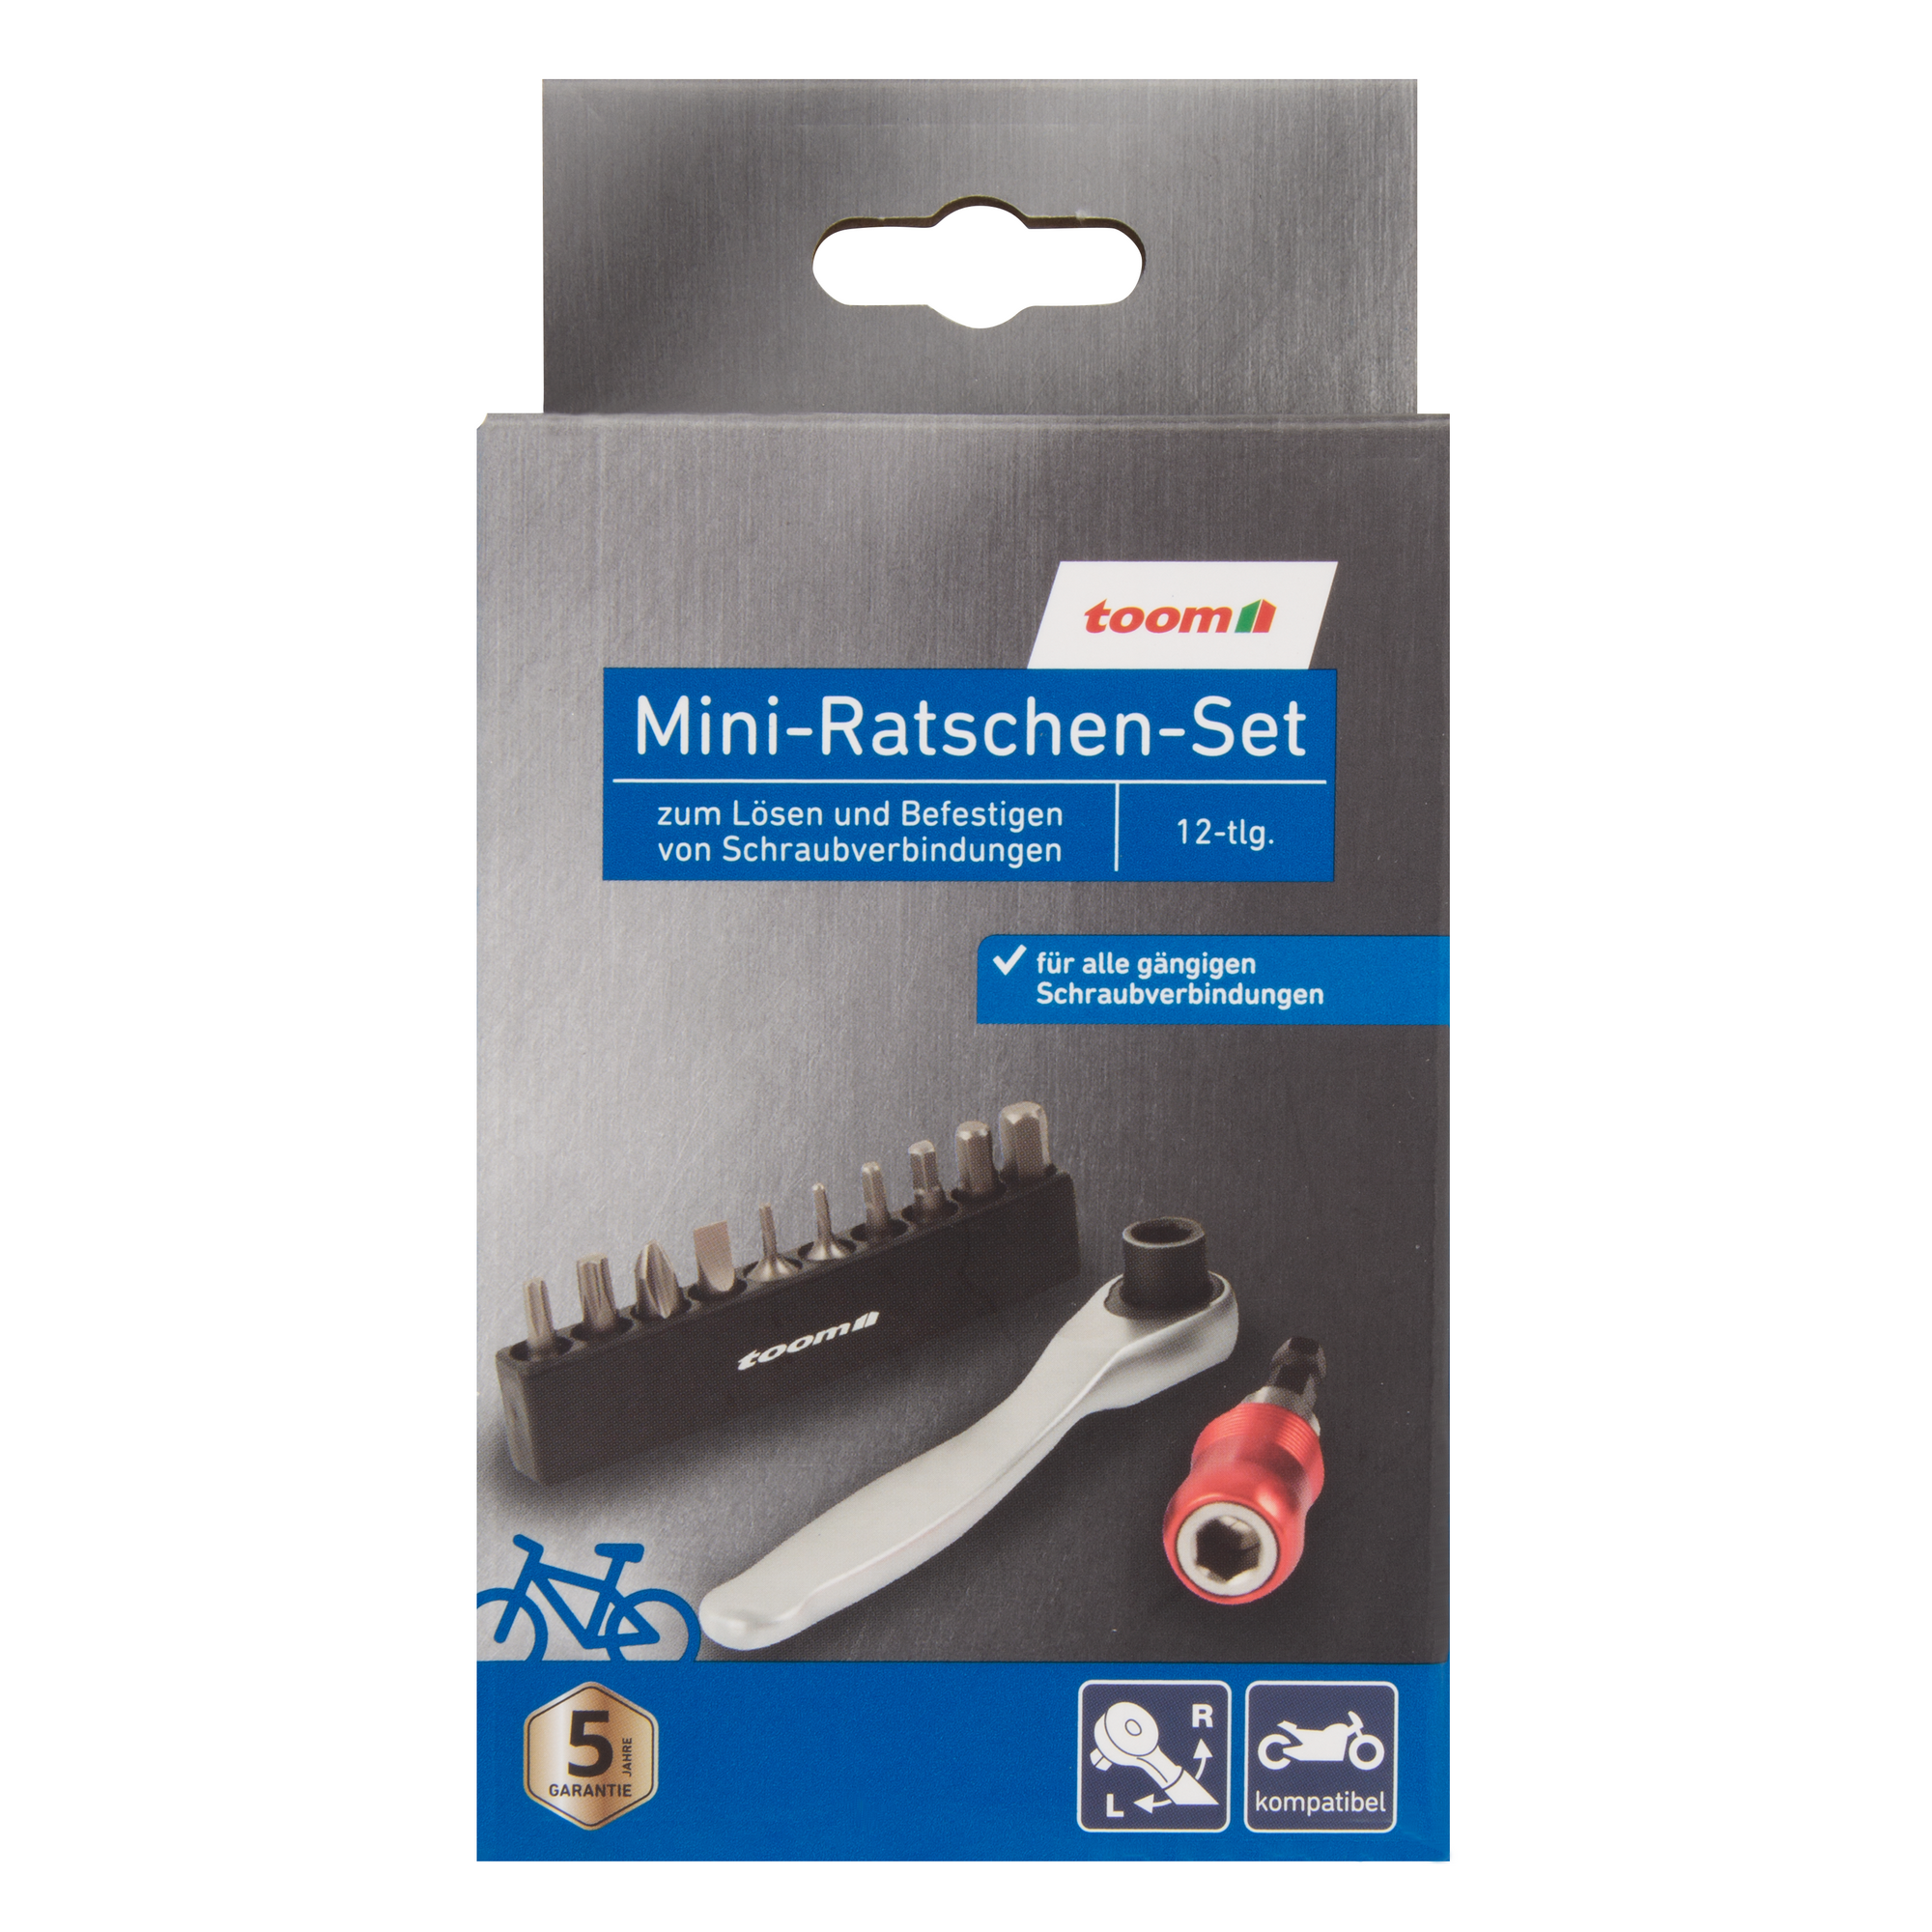 Mini-Ratschen-Set 12-teilig, Aufbewahrungsbox + product picture